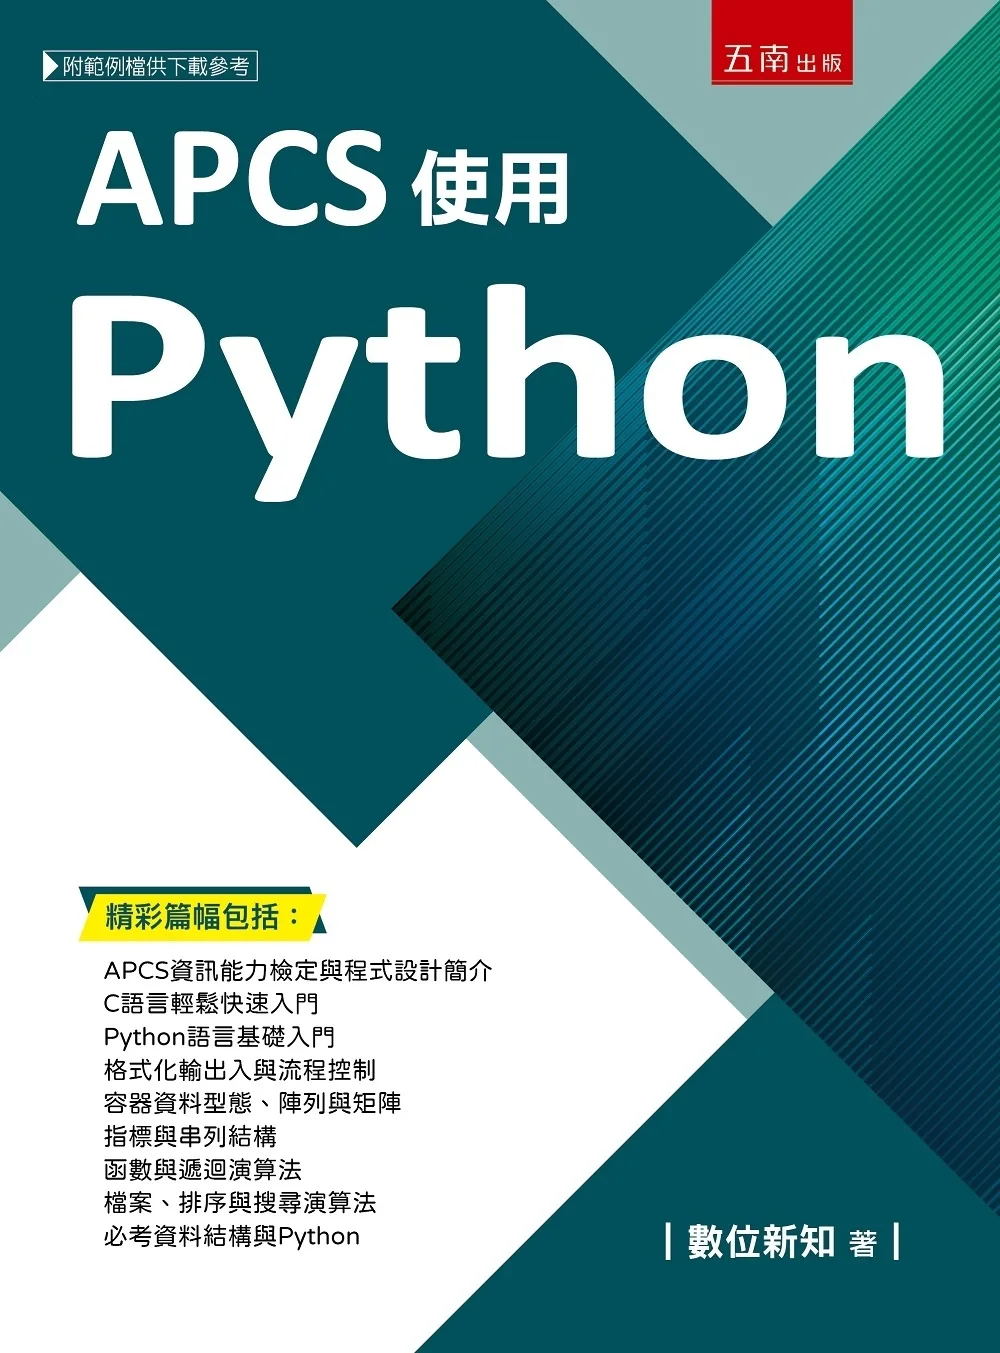 APCS使用Python